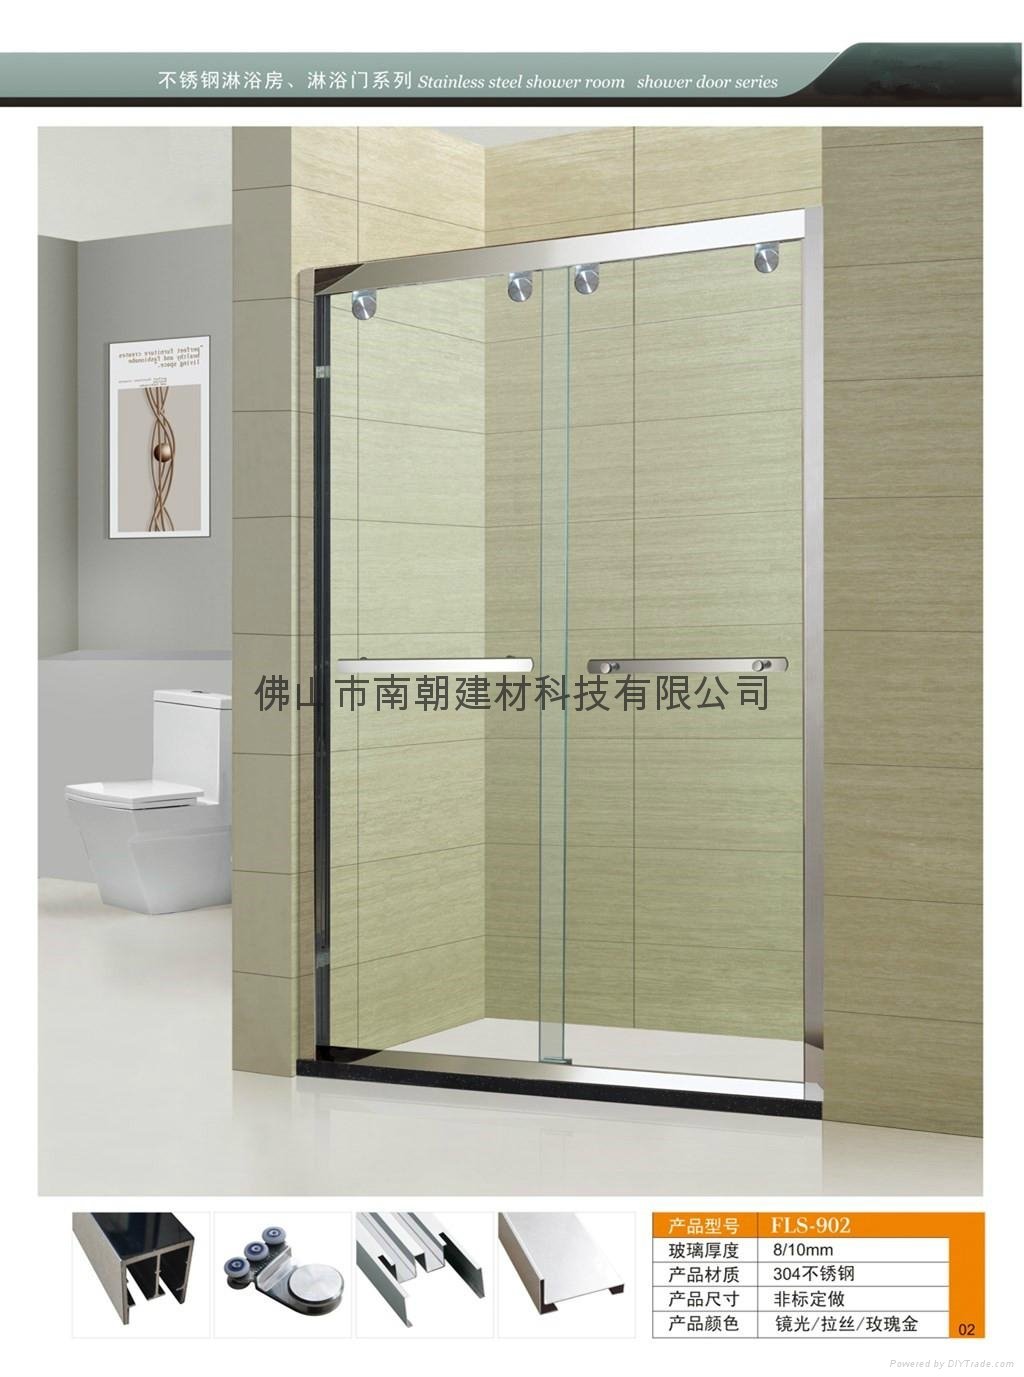 FS-902批发销售 品牌酒店一体式玻璃淋浴房 整体长方形玻璃淋浴房 3